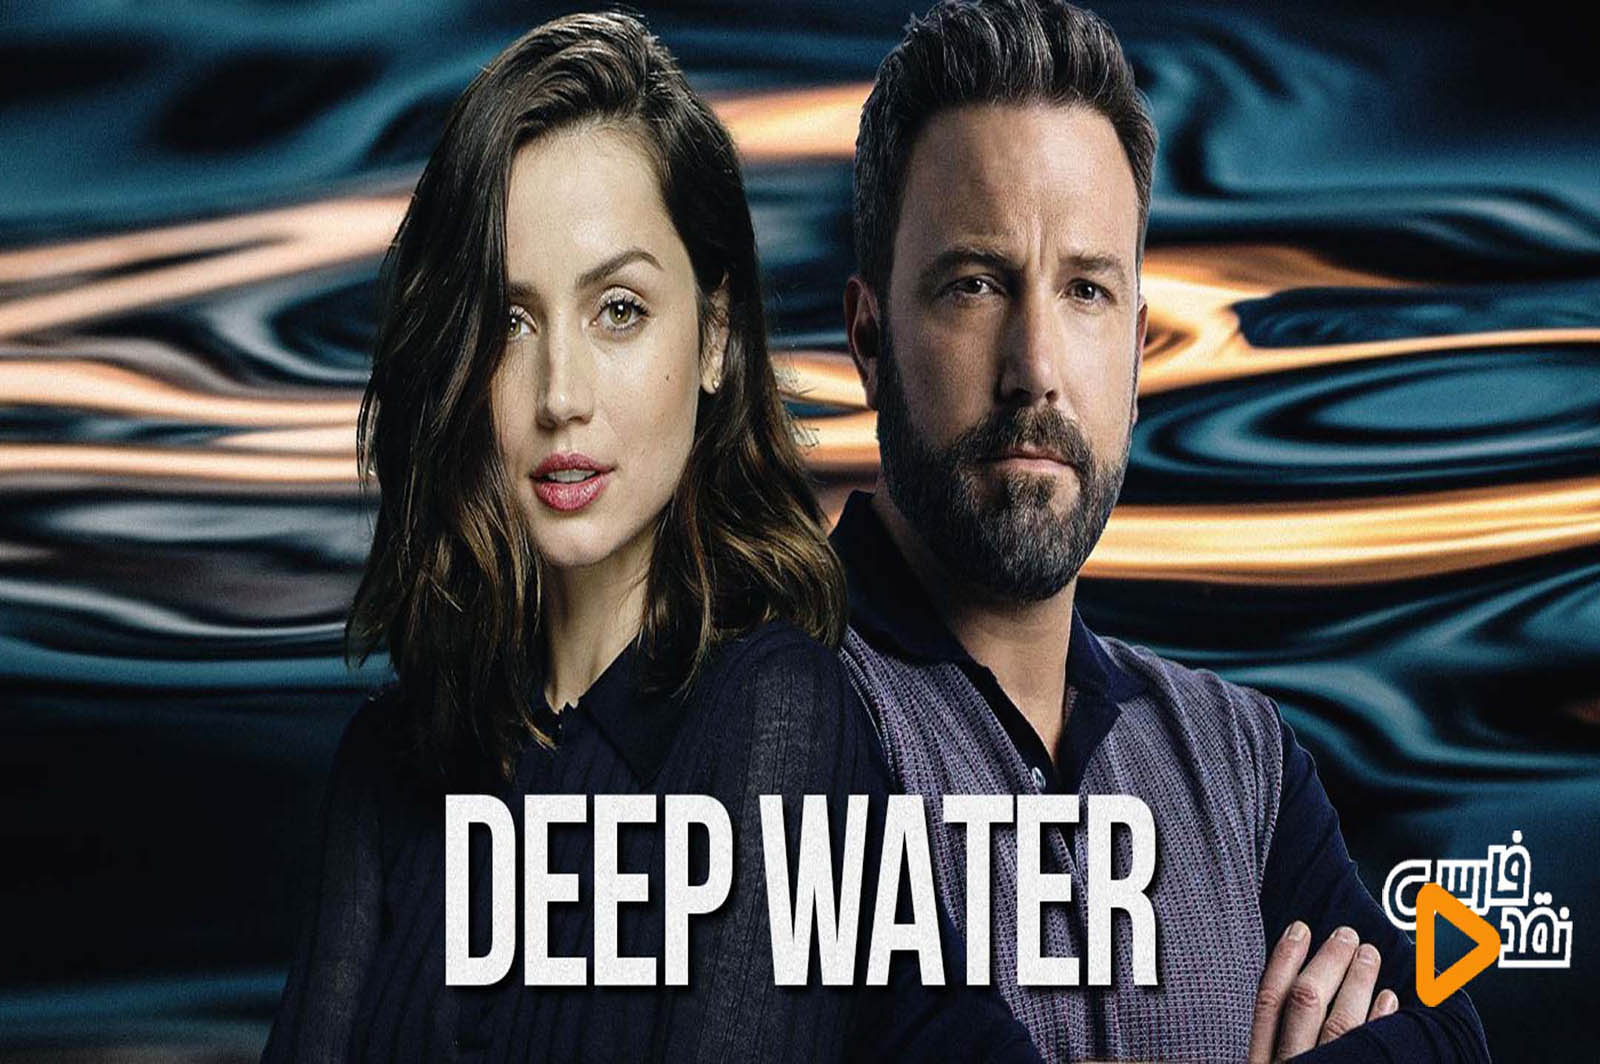 نقد فیلم Deep Water